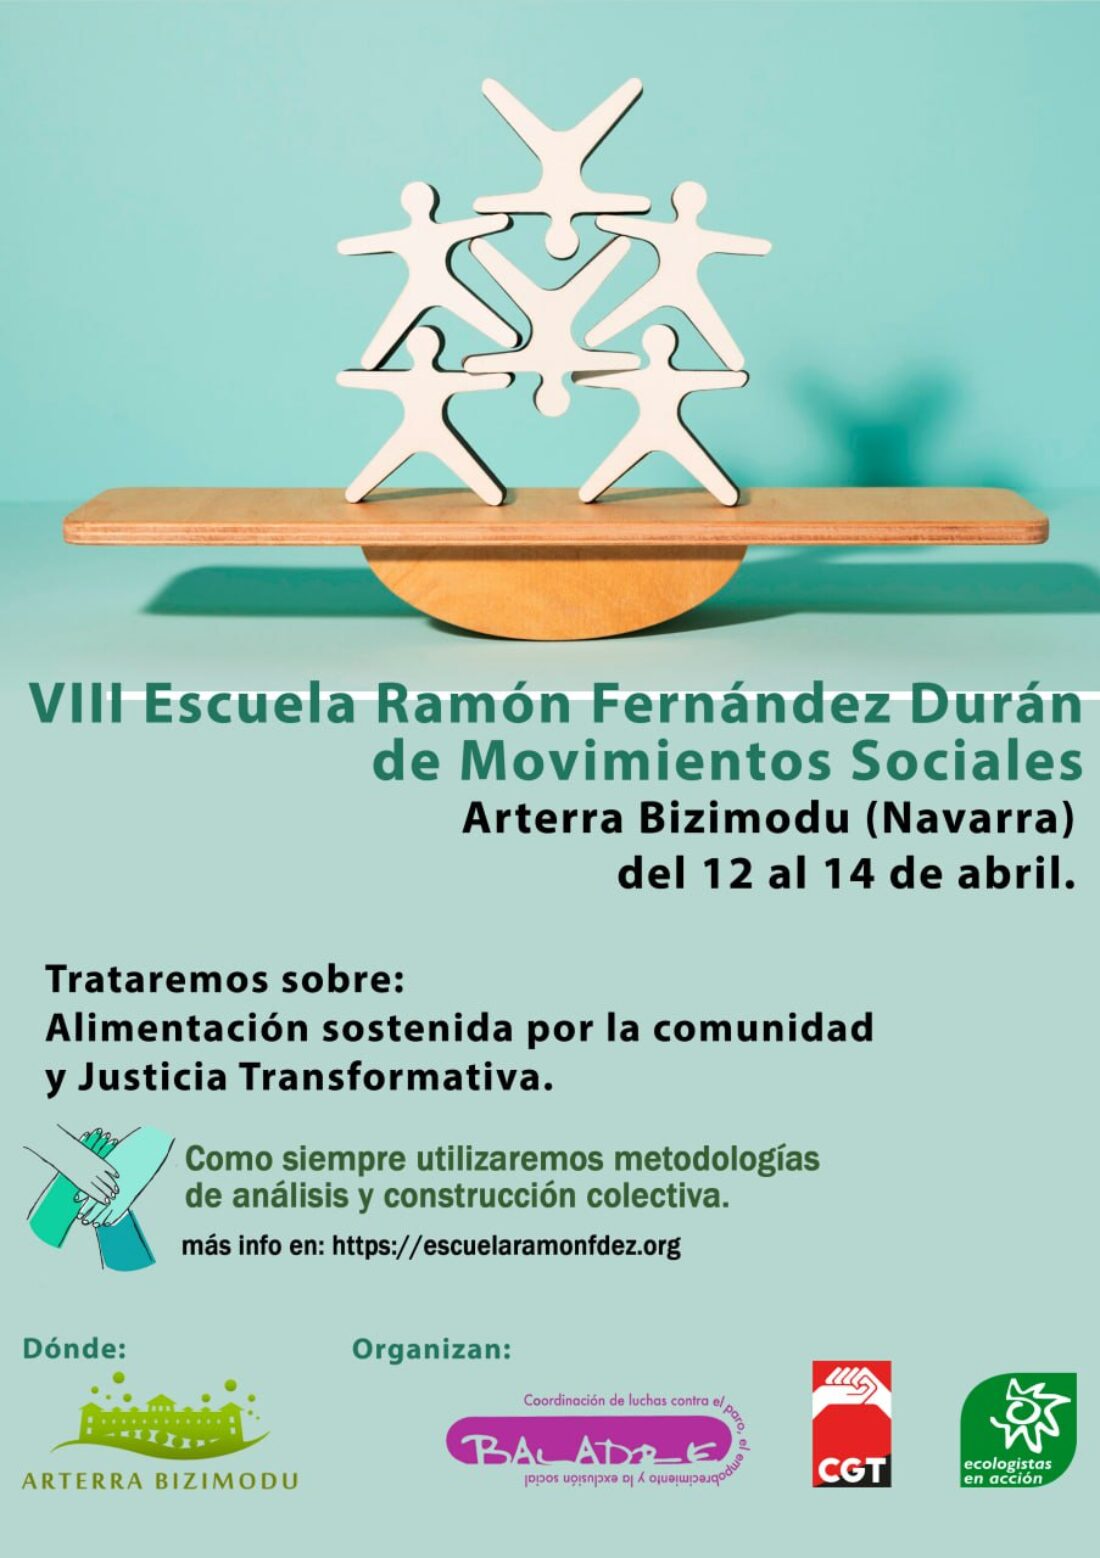 Del 12 al 14 de abril, VIII Edición de la Escuela Ramón Fernández Durán. ¡¡Apúntate!!